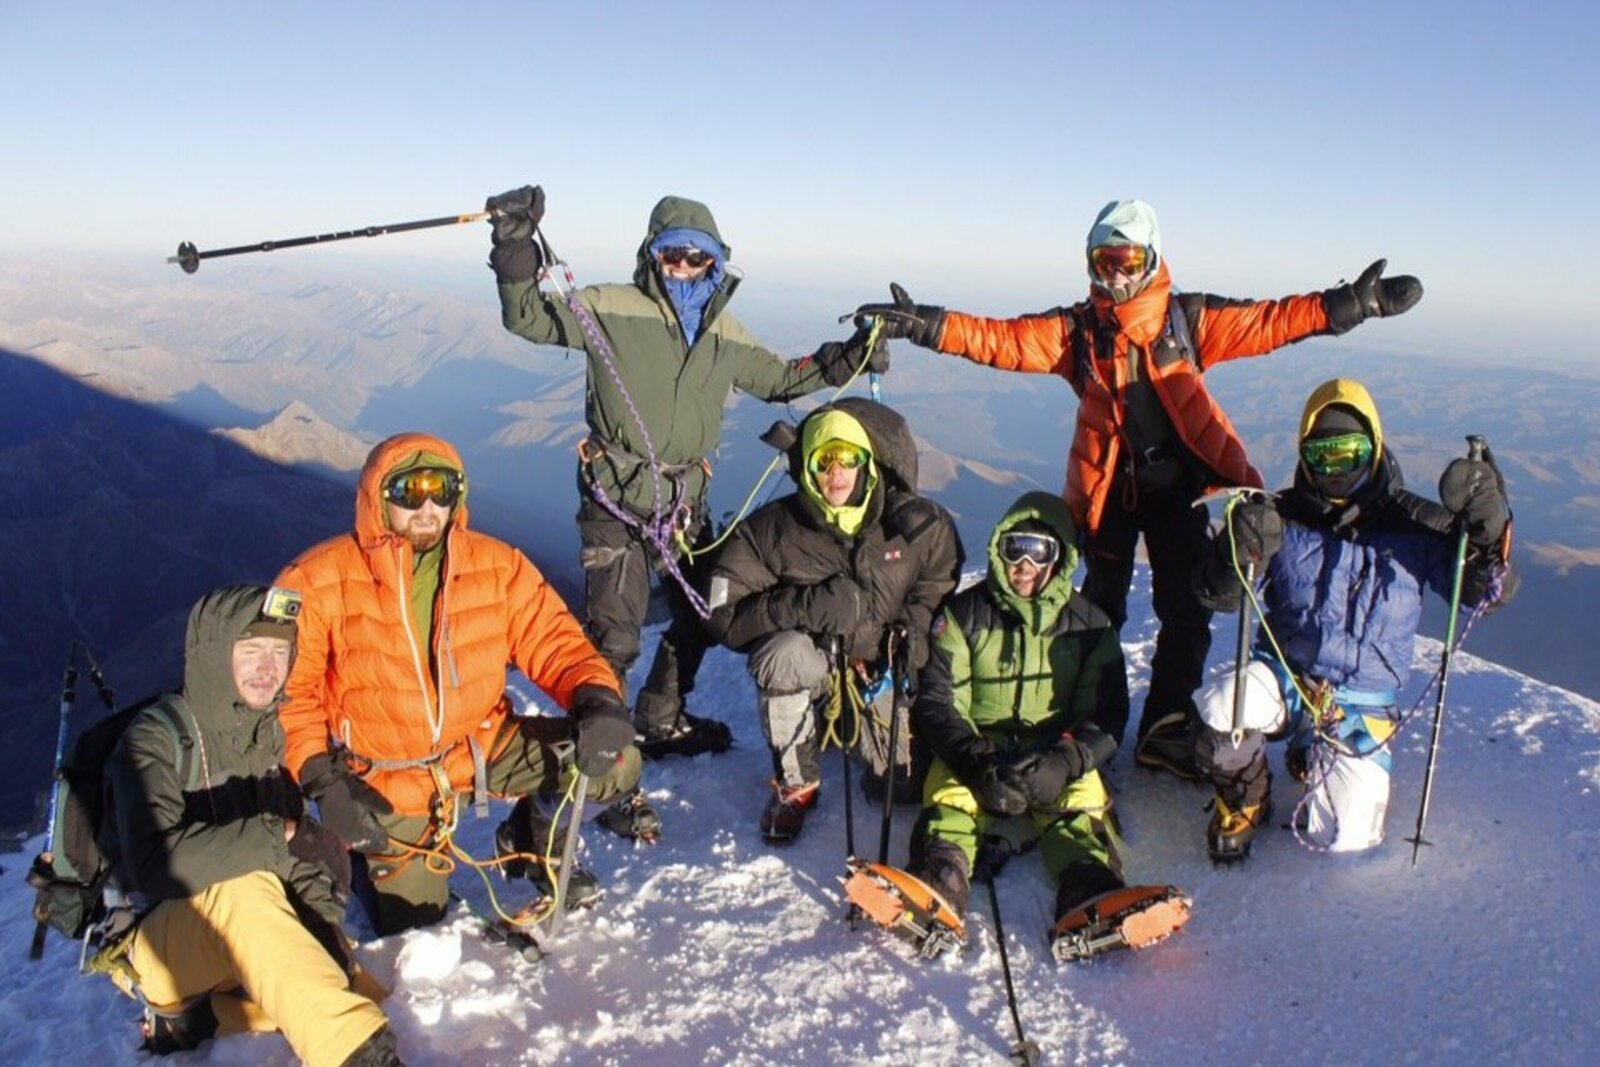 Азат Хакимов(второй слева) с участниками своей группы и гидами на вершине Эльбруса.